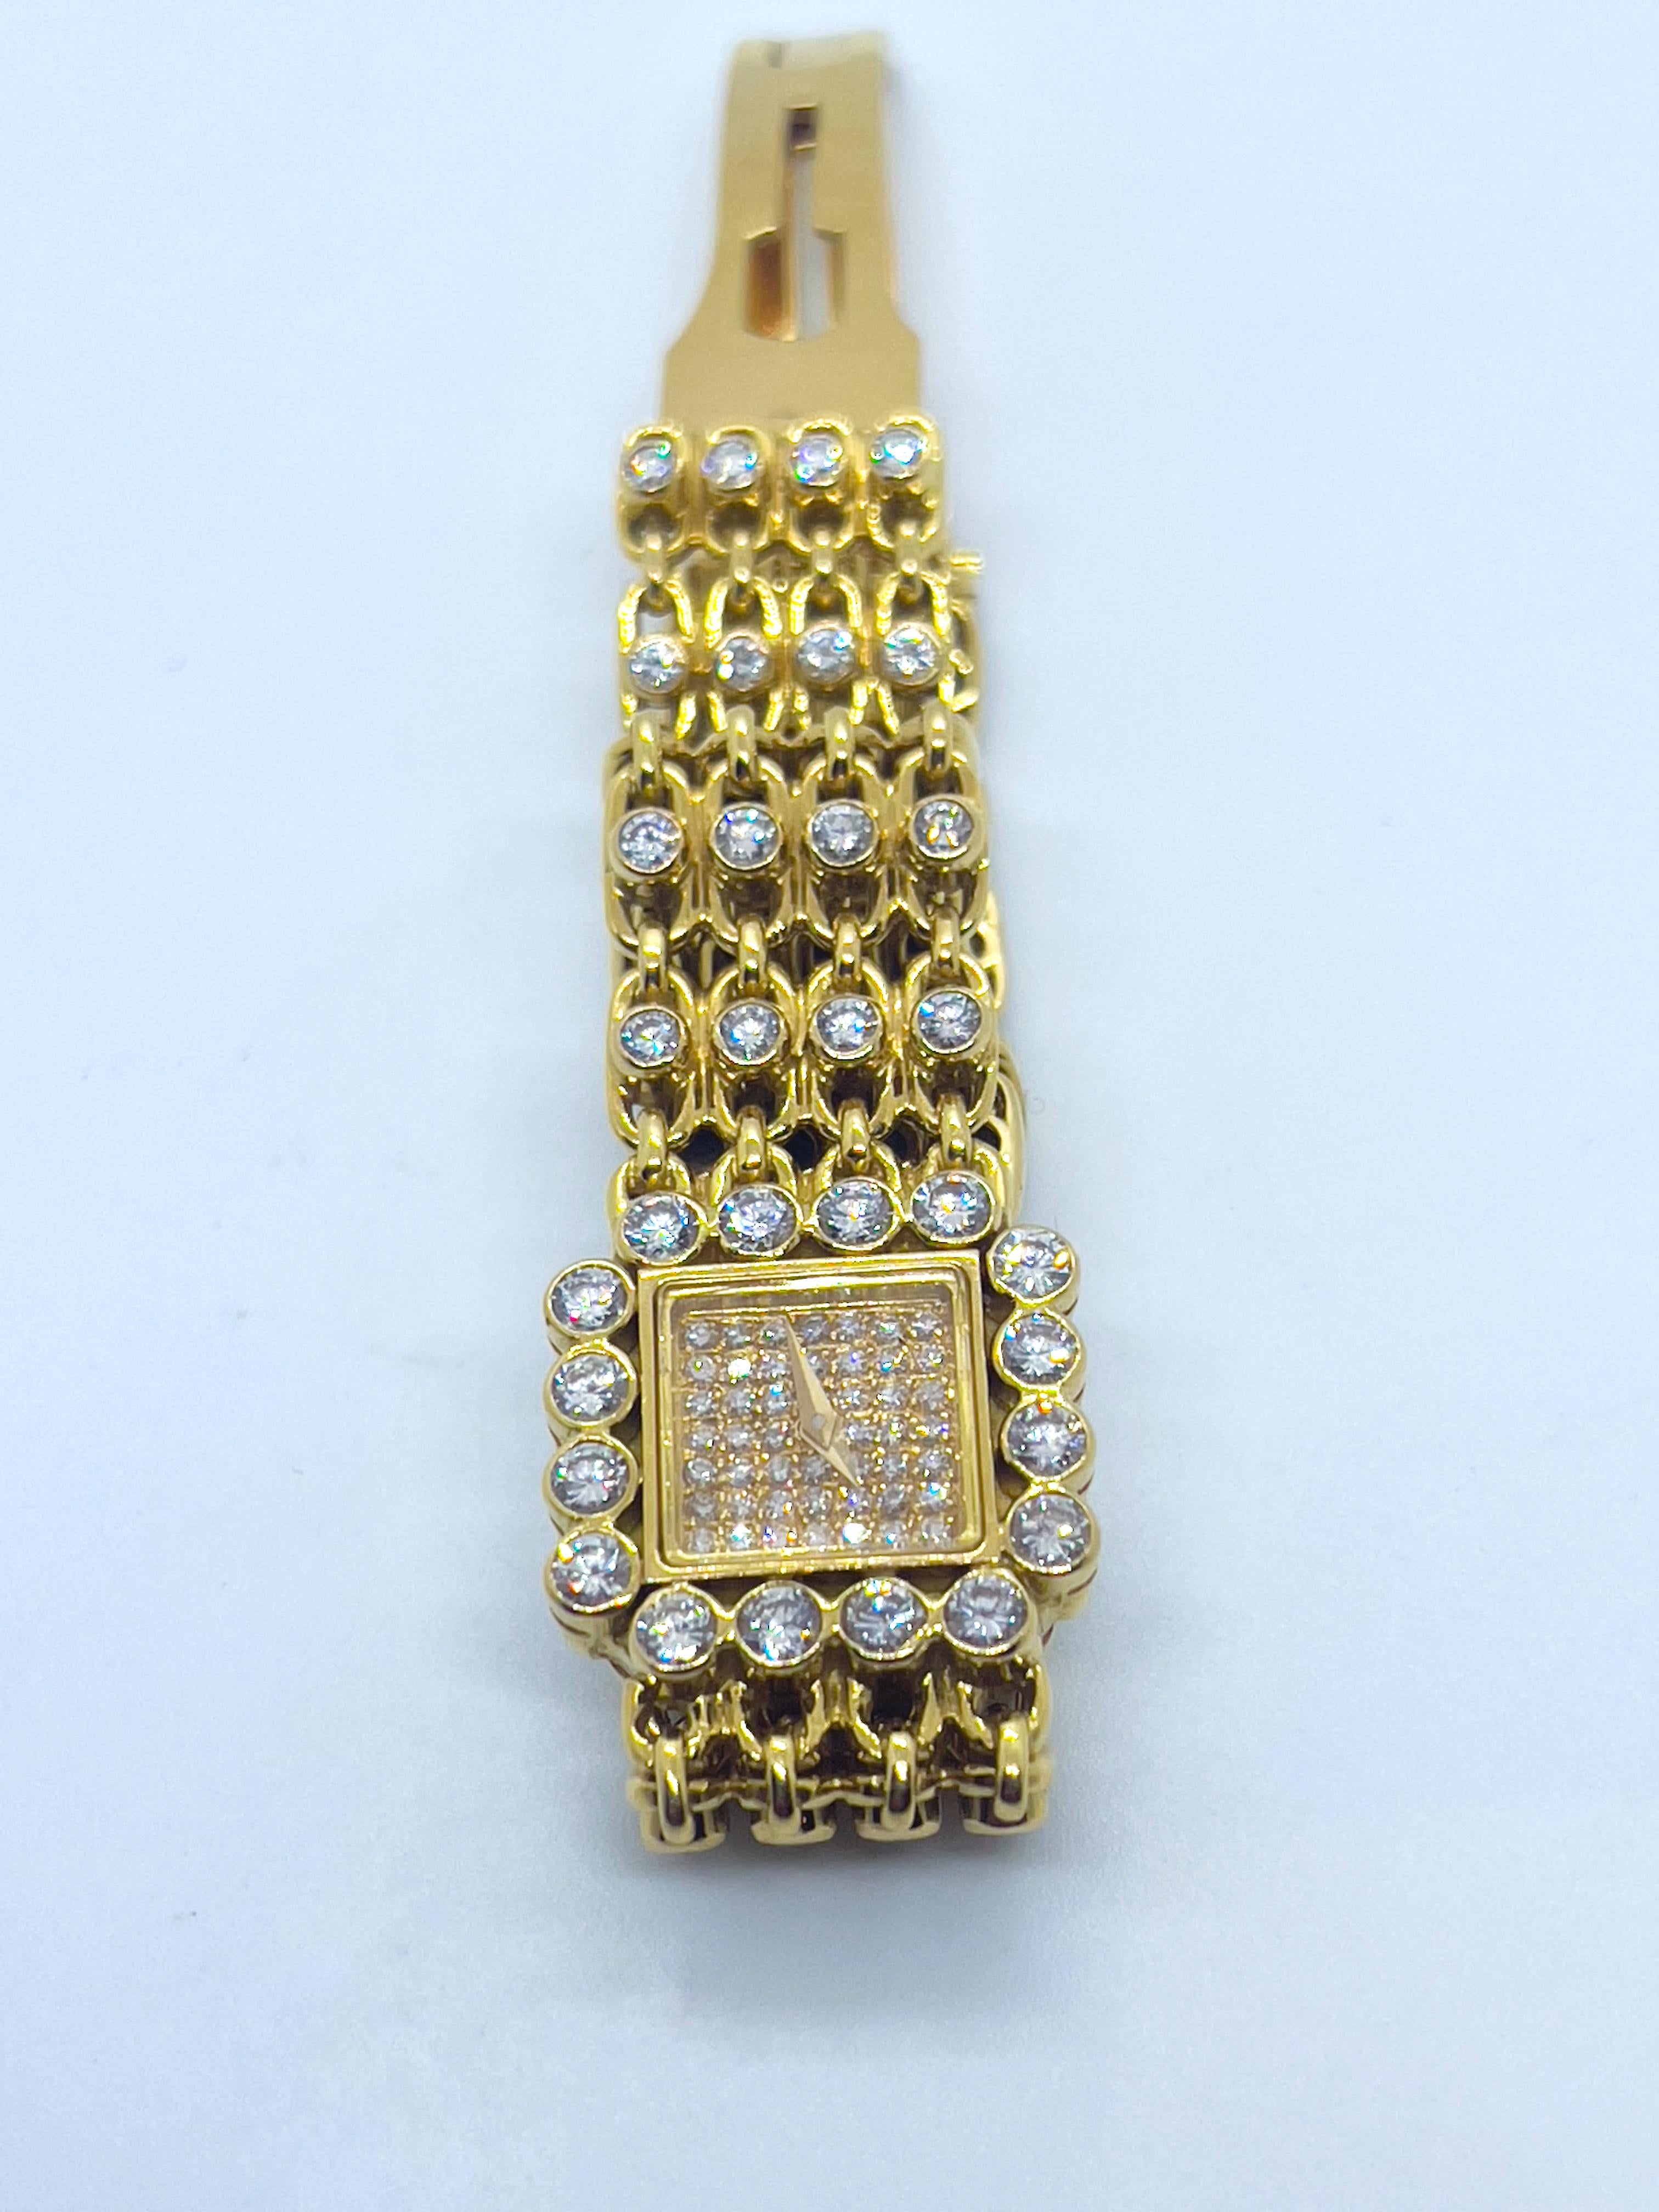 Magnifique montre pour dame Jahan en or jaune 18 carats, sertie de diamants. Le cadran rectangulaire, entièrement pavé de diamants de taille ronde, est également entouré de 16 diamants de 0,1 carat chacun. Le bracelet en or est orné de 88 diamants